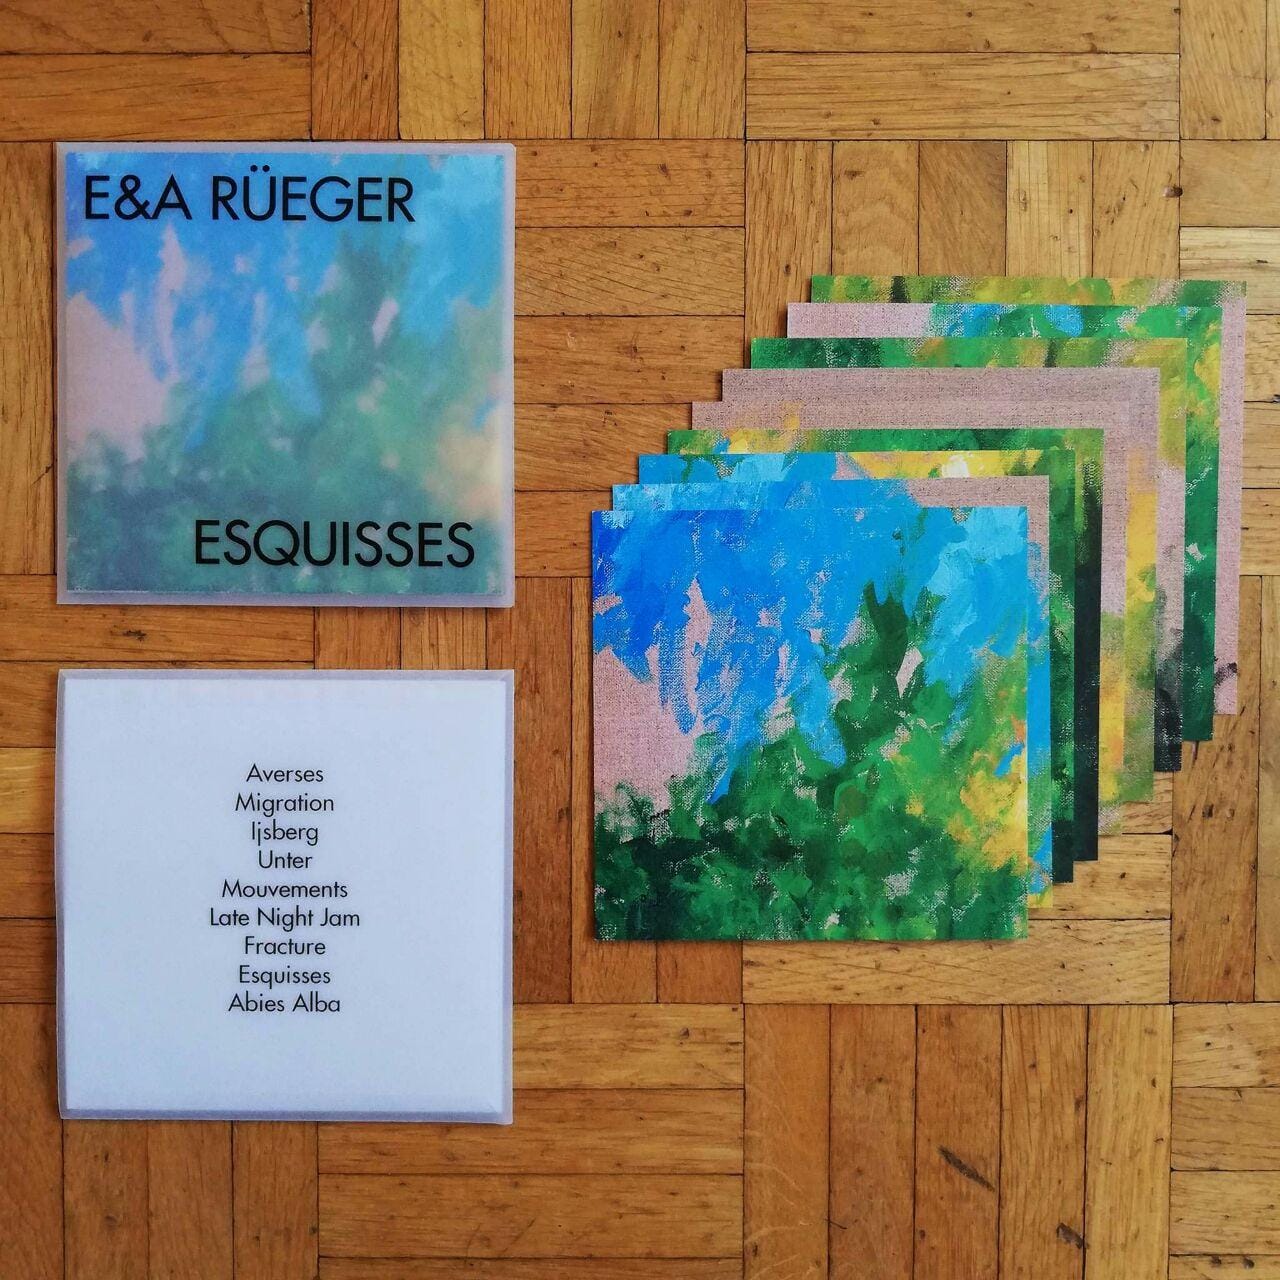 E&A Rüeger